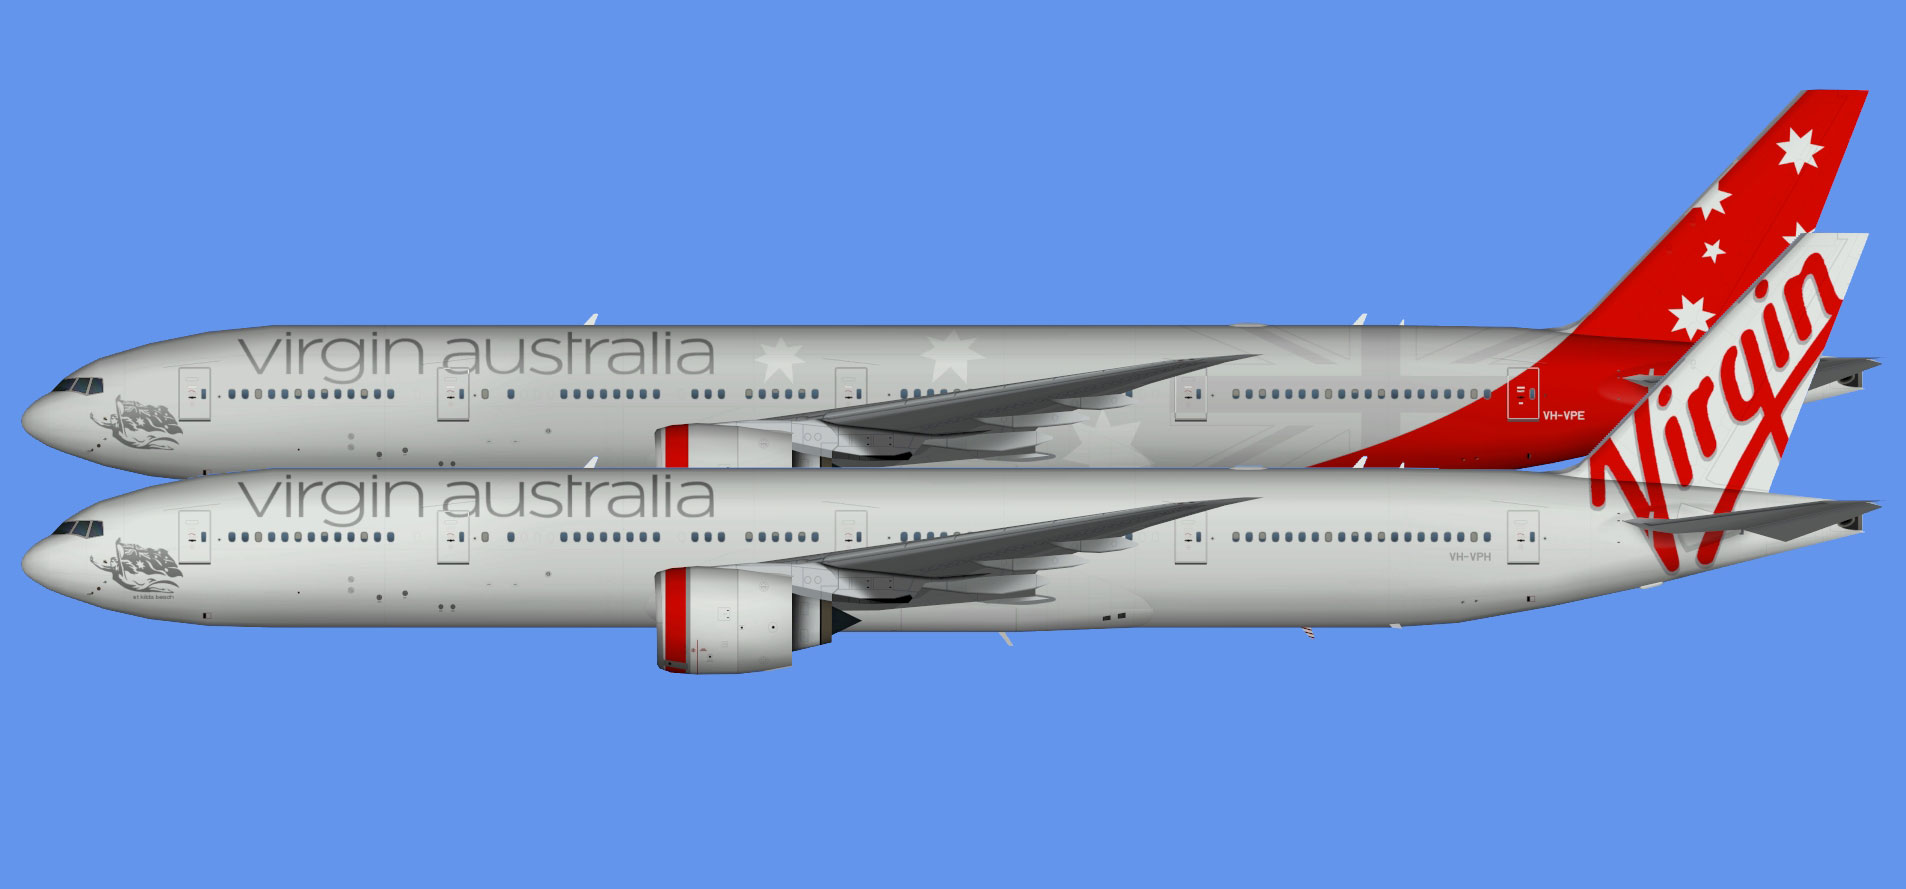 Virgin Australia Airlines - The Flying Carpet Hub